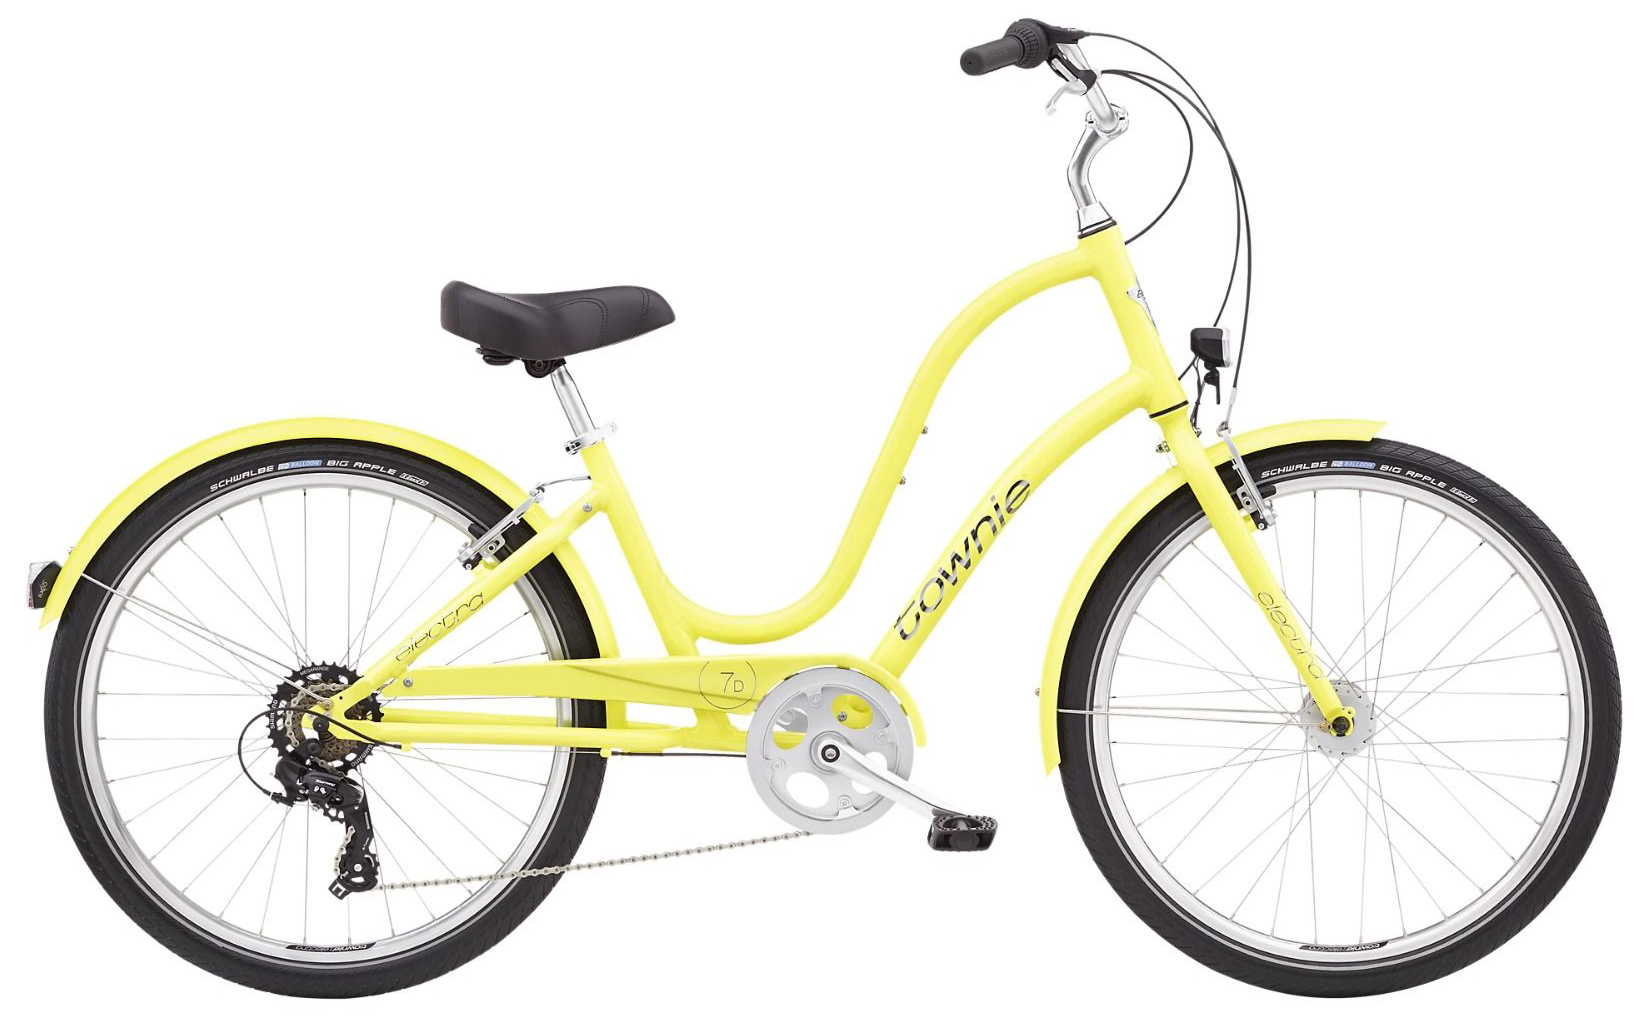  Отзывы о Городском велосипеде Electra Townie 7D EQ Step Thru 2022